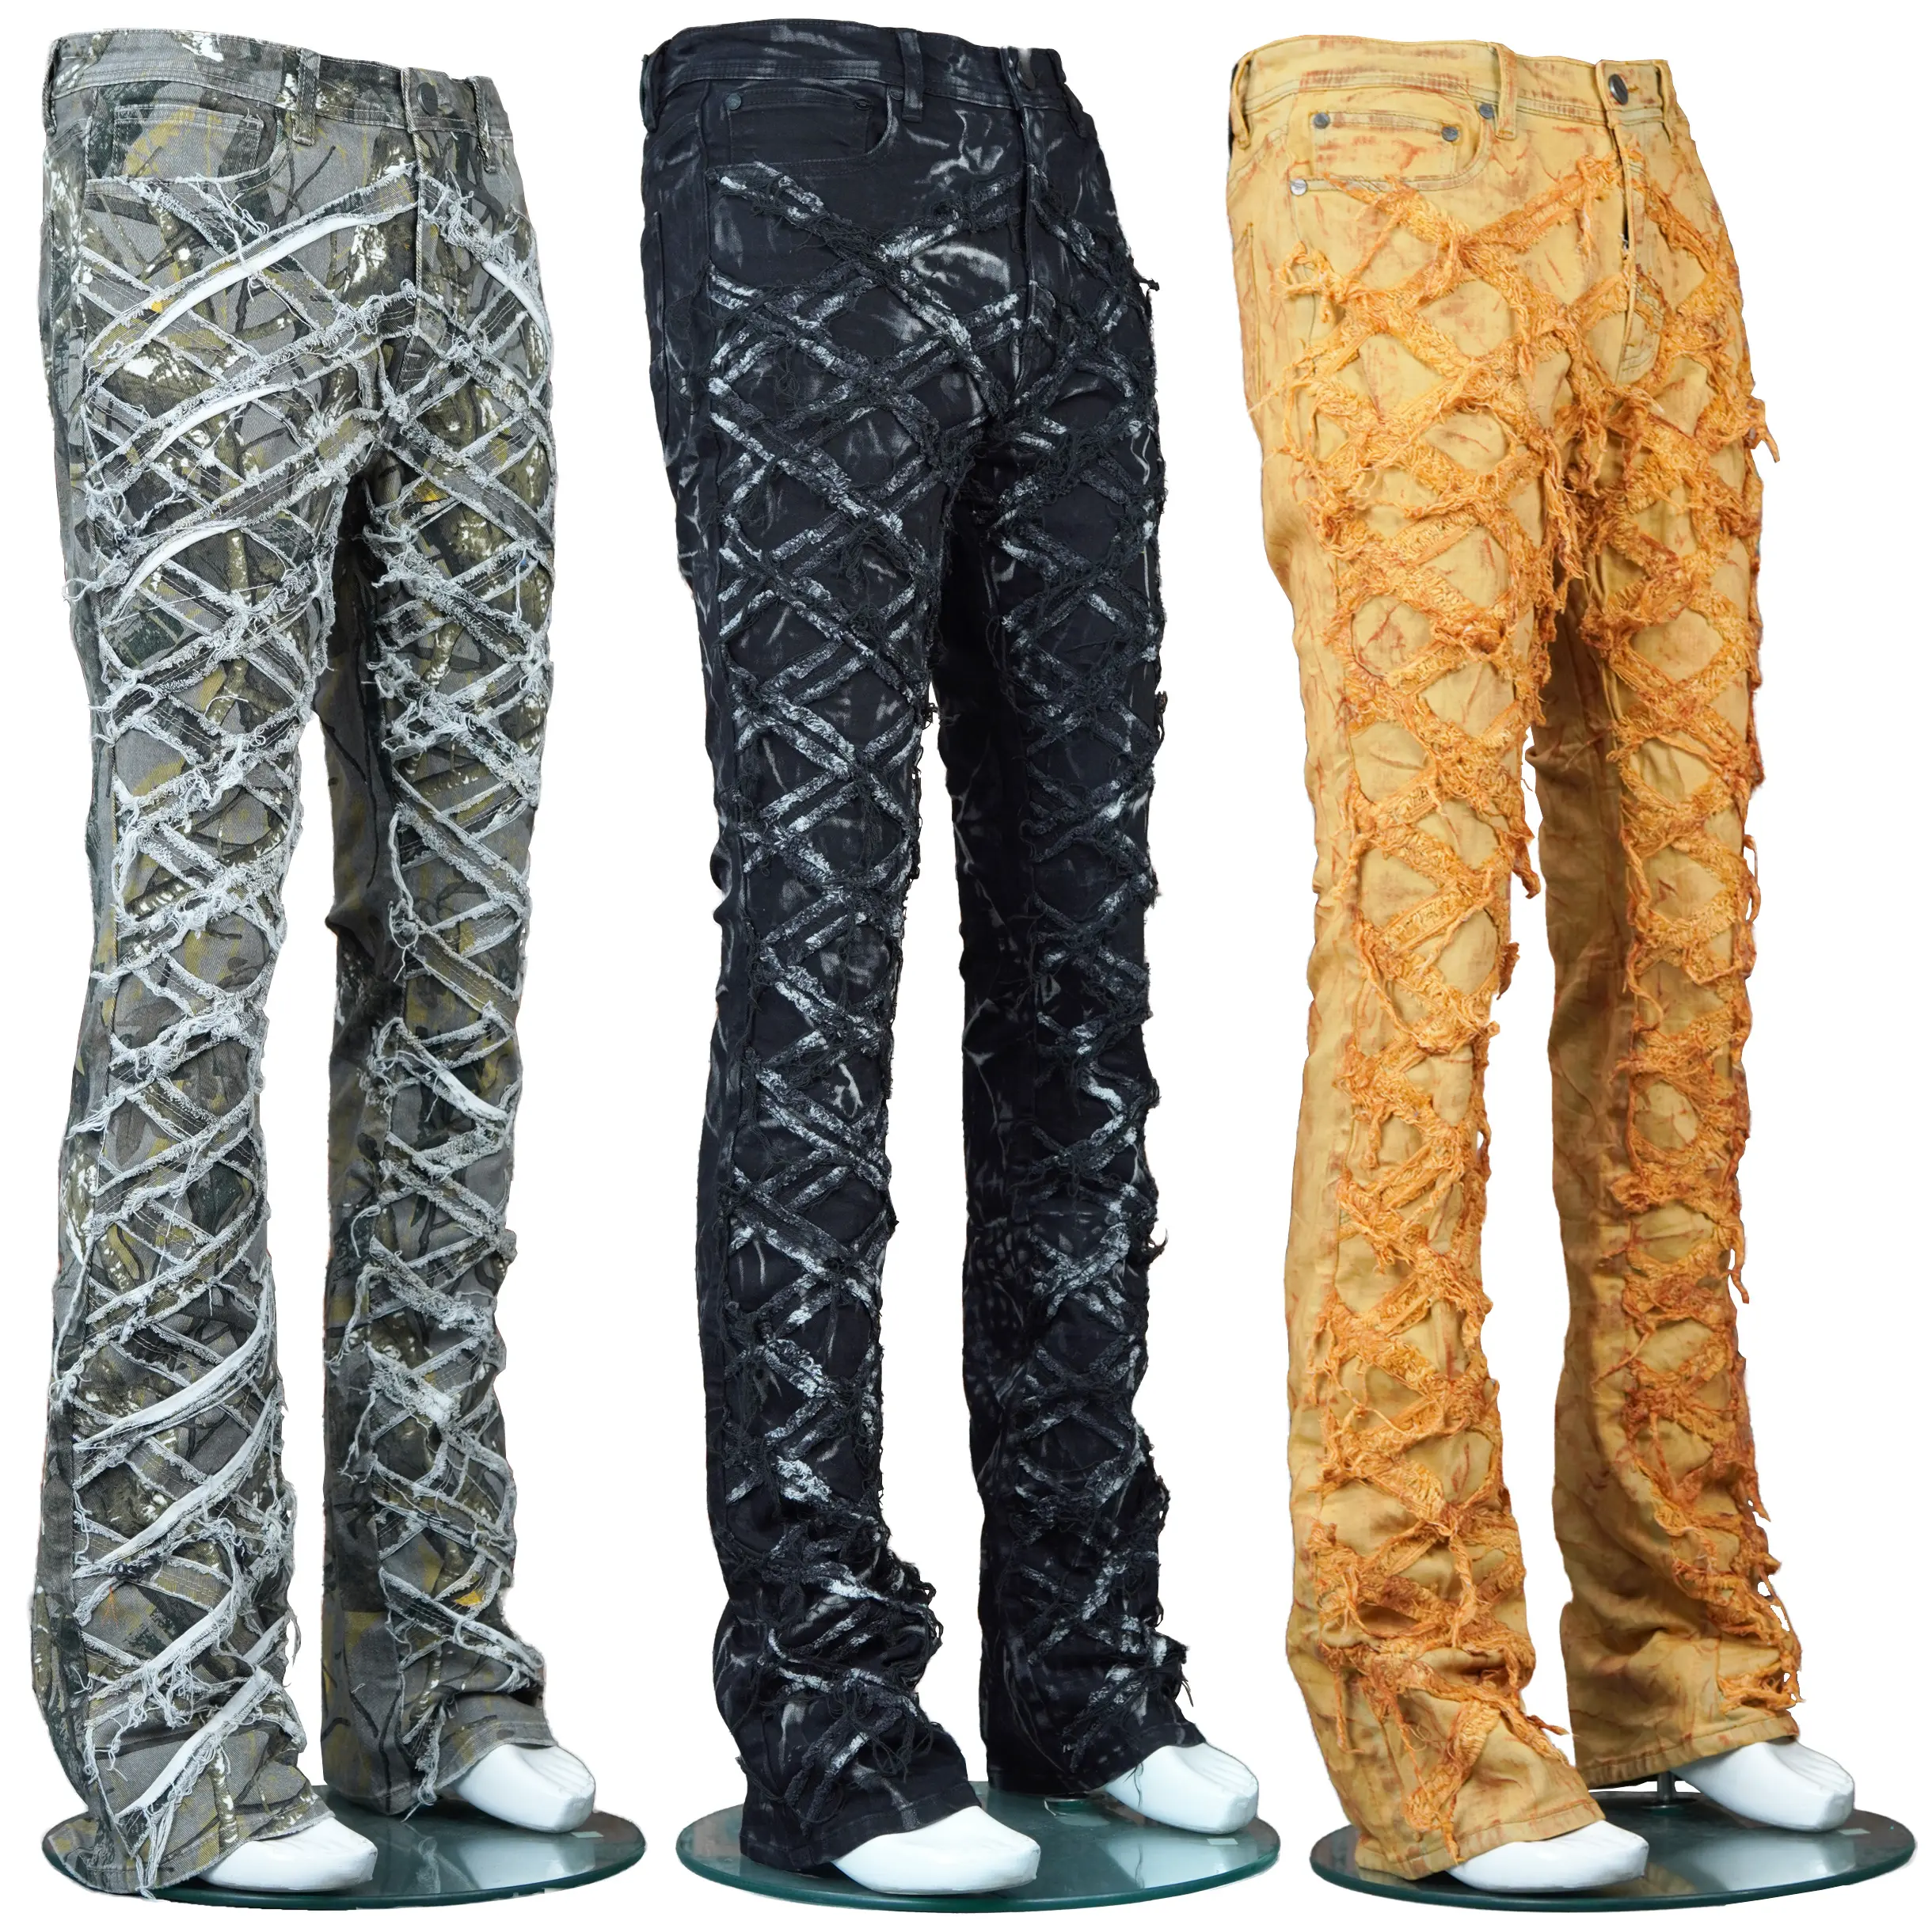 מכנסי גברים בעיצוב חדש באיכות הגבוהה ביותר, ג'ינס קז'ואל עם רגליים ישרות מוערמות באיכות הייצוא הגבוהה ביותר